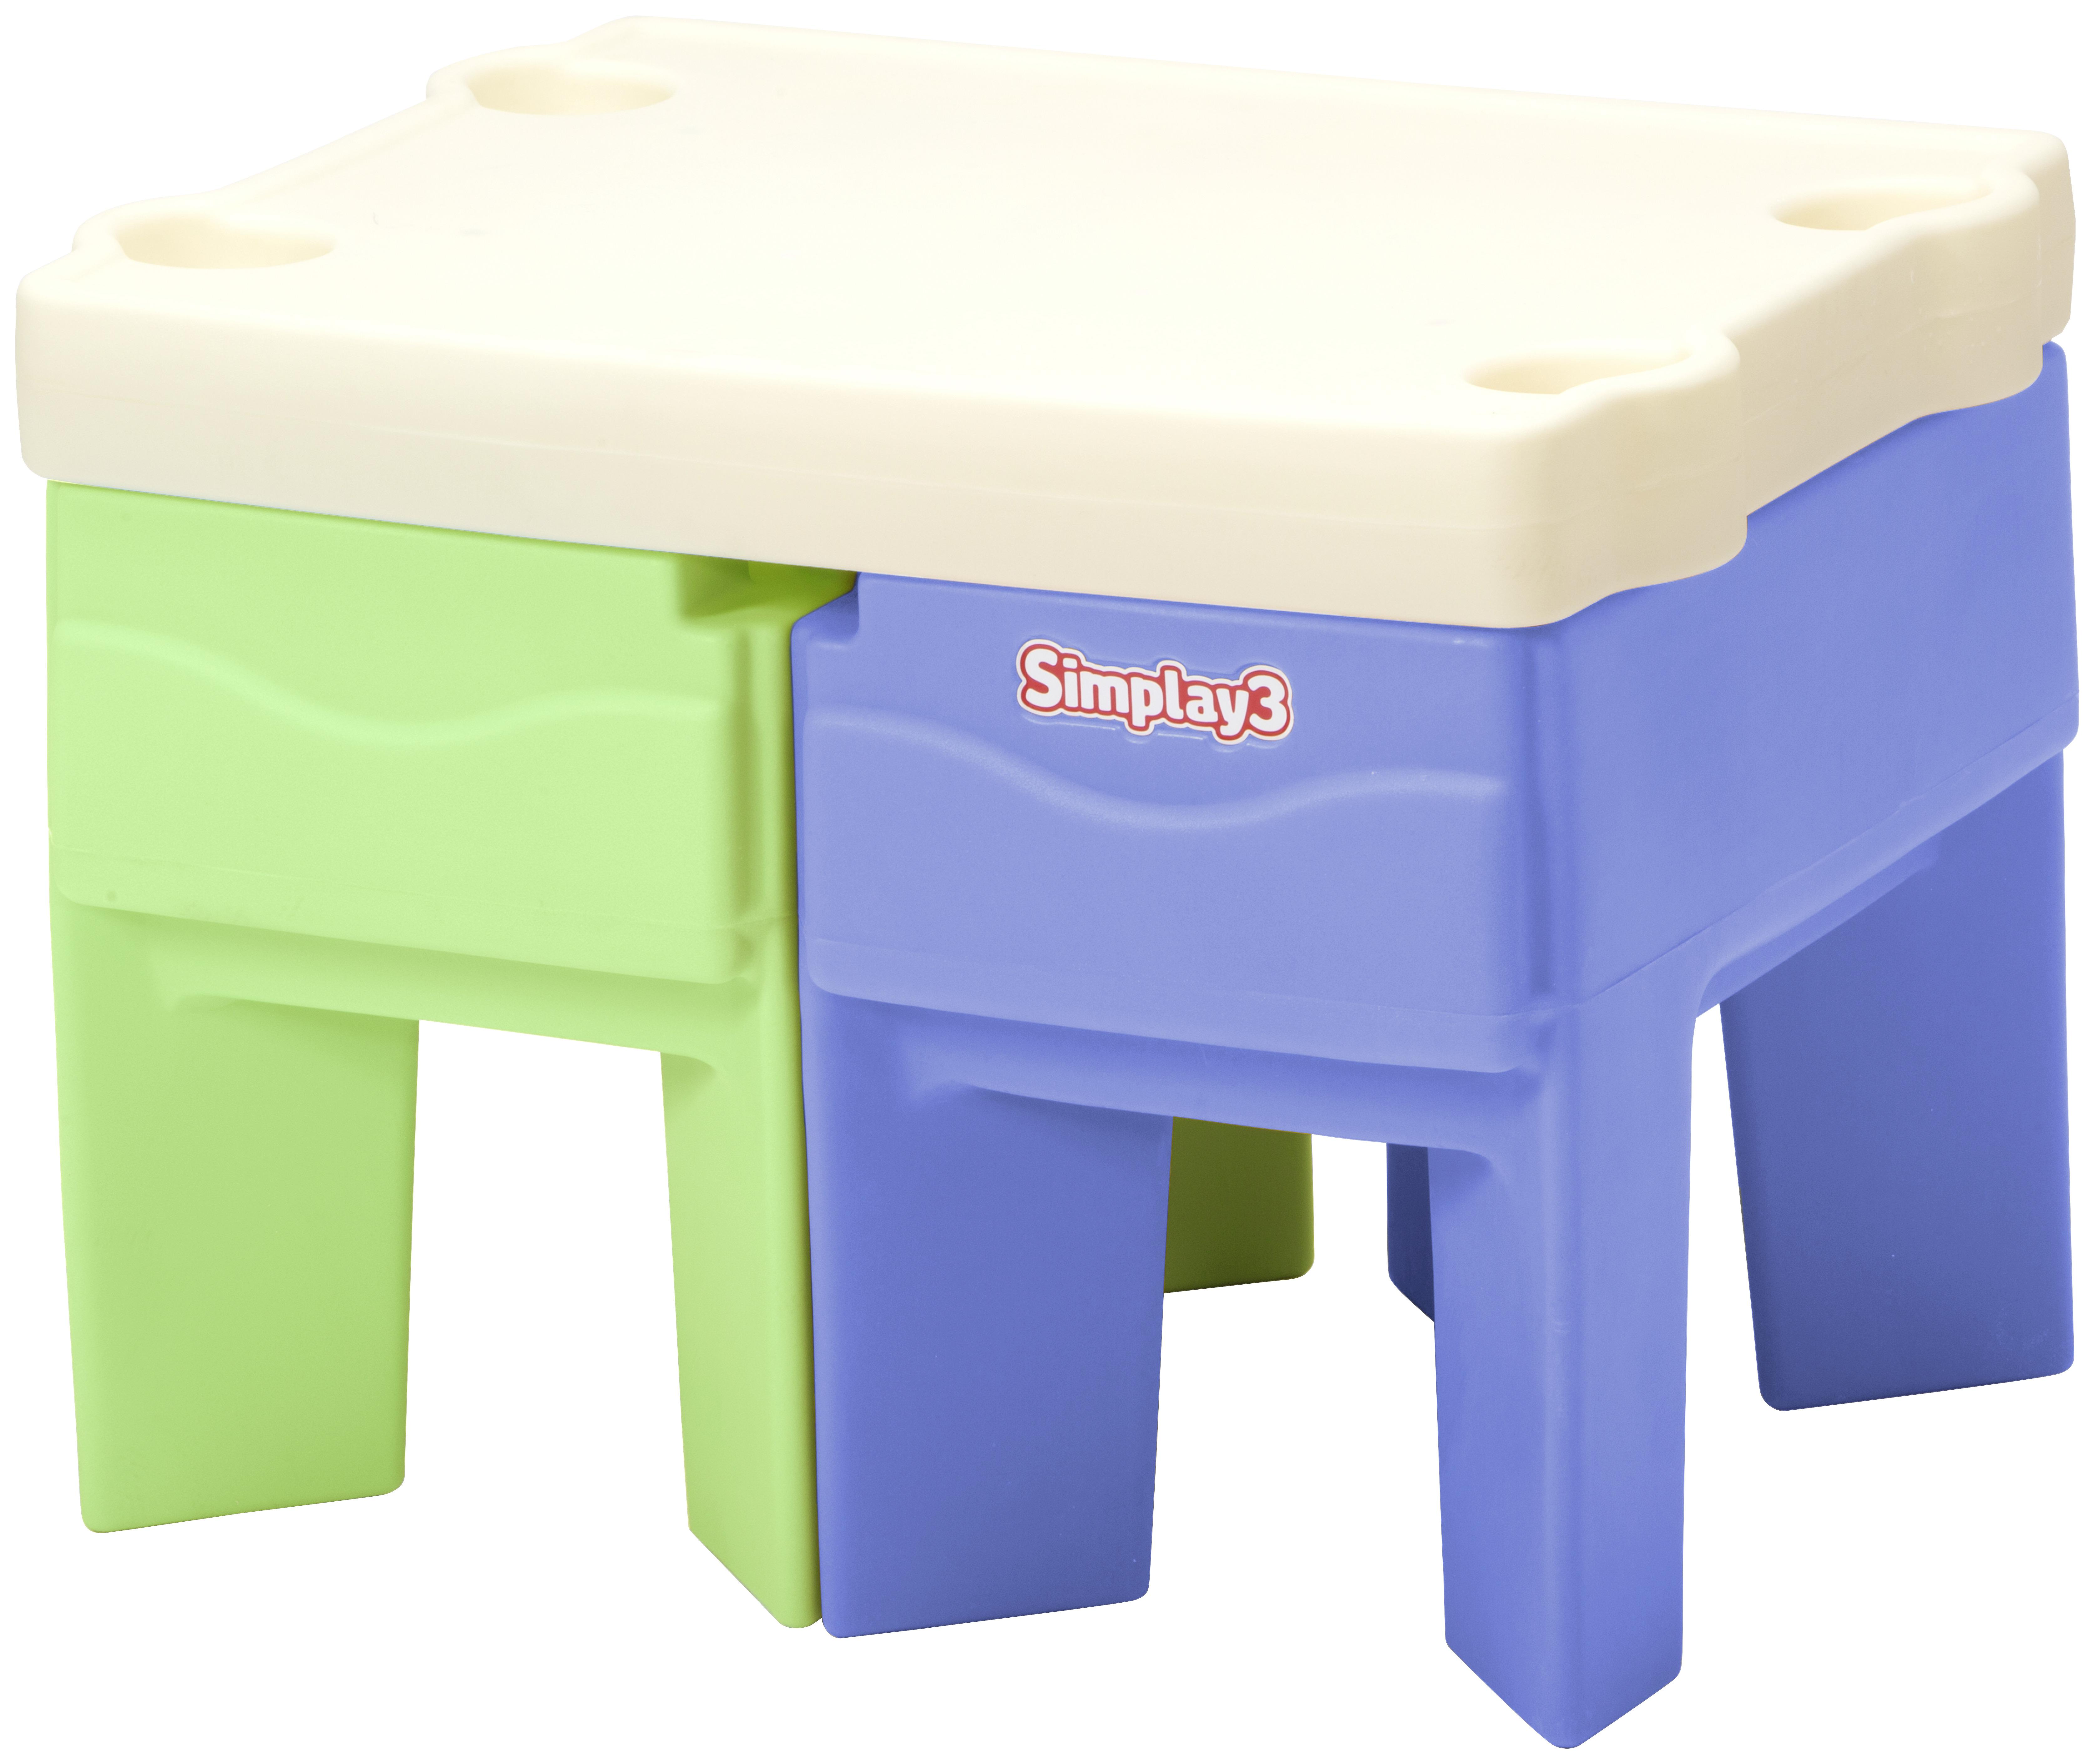 Spiel-Set Simplay 3 Spielcenter, Ab 1,5 Jahren - Multicolor, Basics, Kunststoff (124,5/48,3/50,8cm)